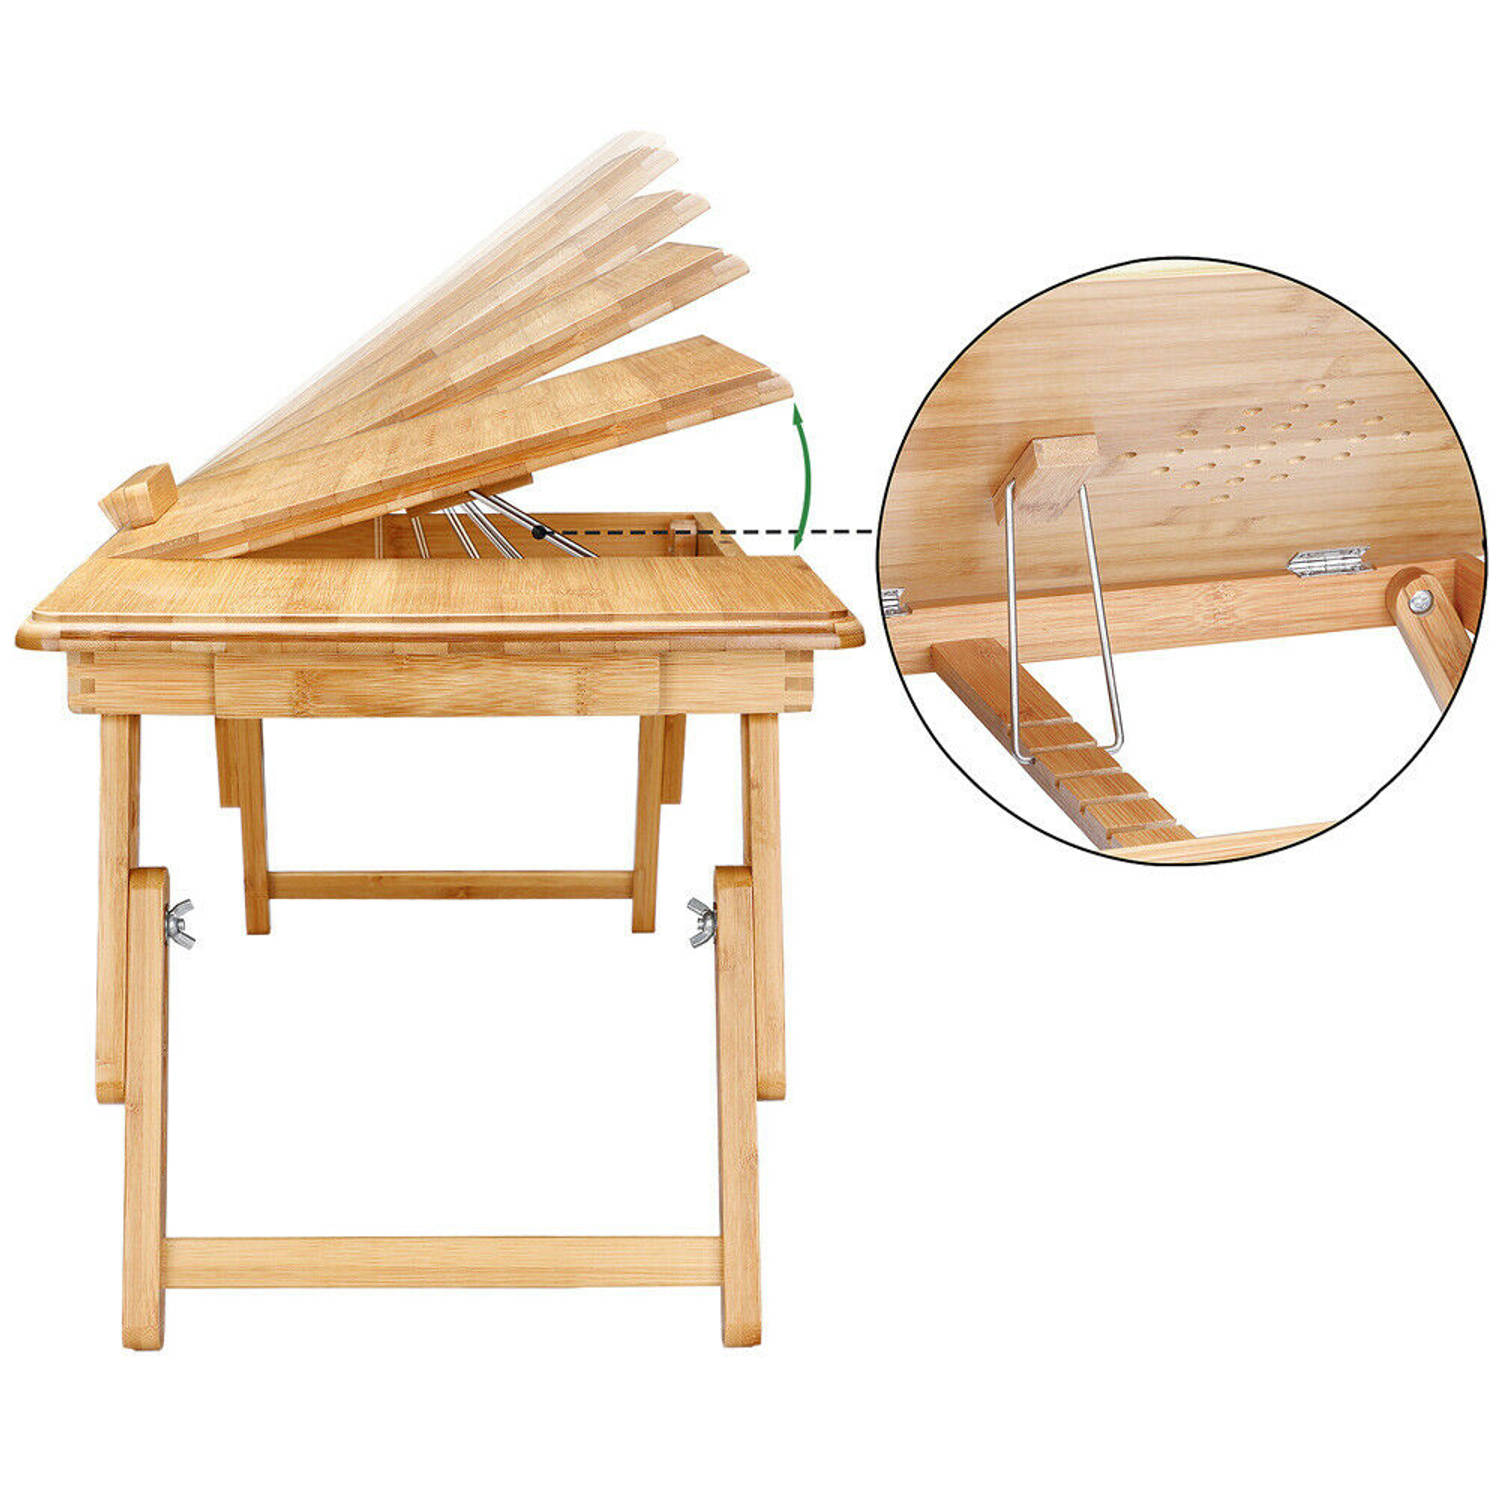 Bamboe laptoptafel - Laptopstand - opklapbaar en verstelbare laptoptafel in hoogtes incl. schuiflade - met ventilatie...